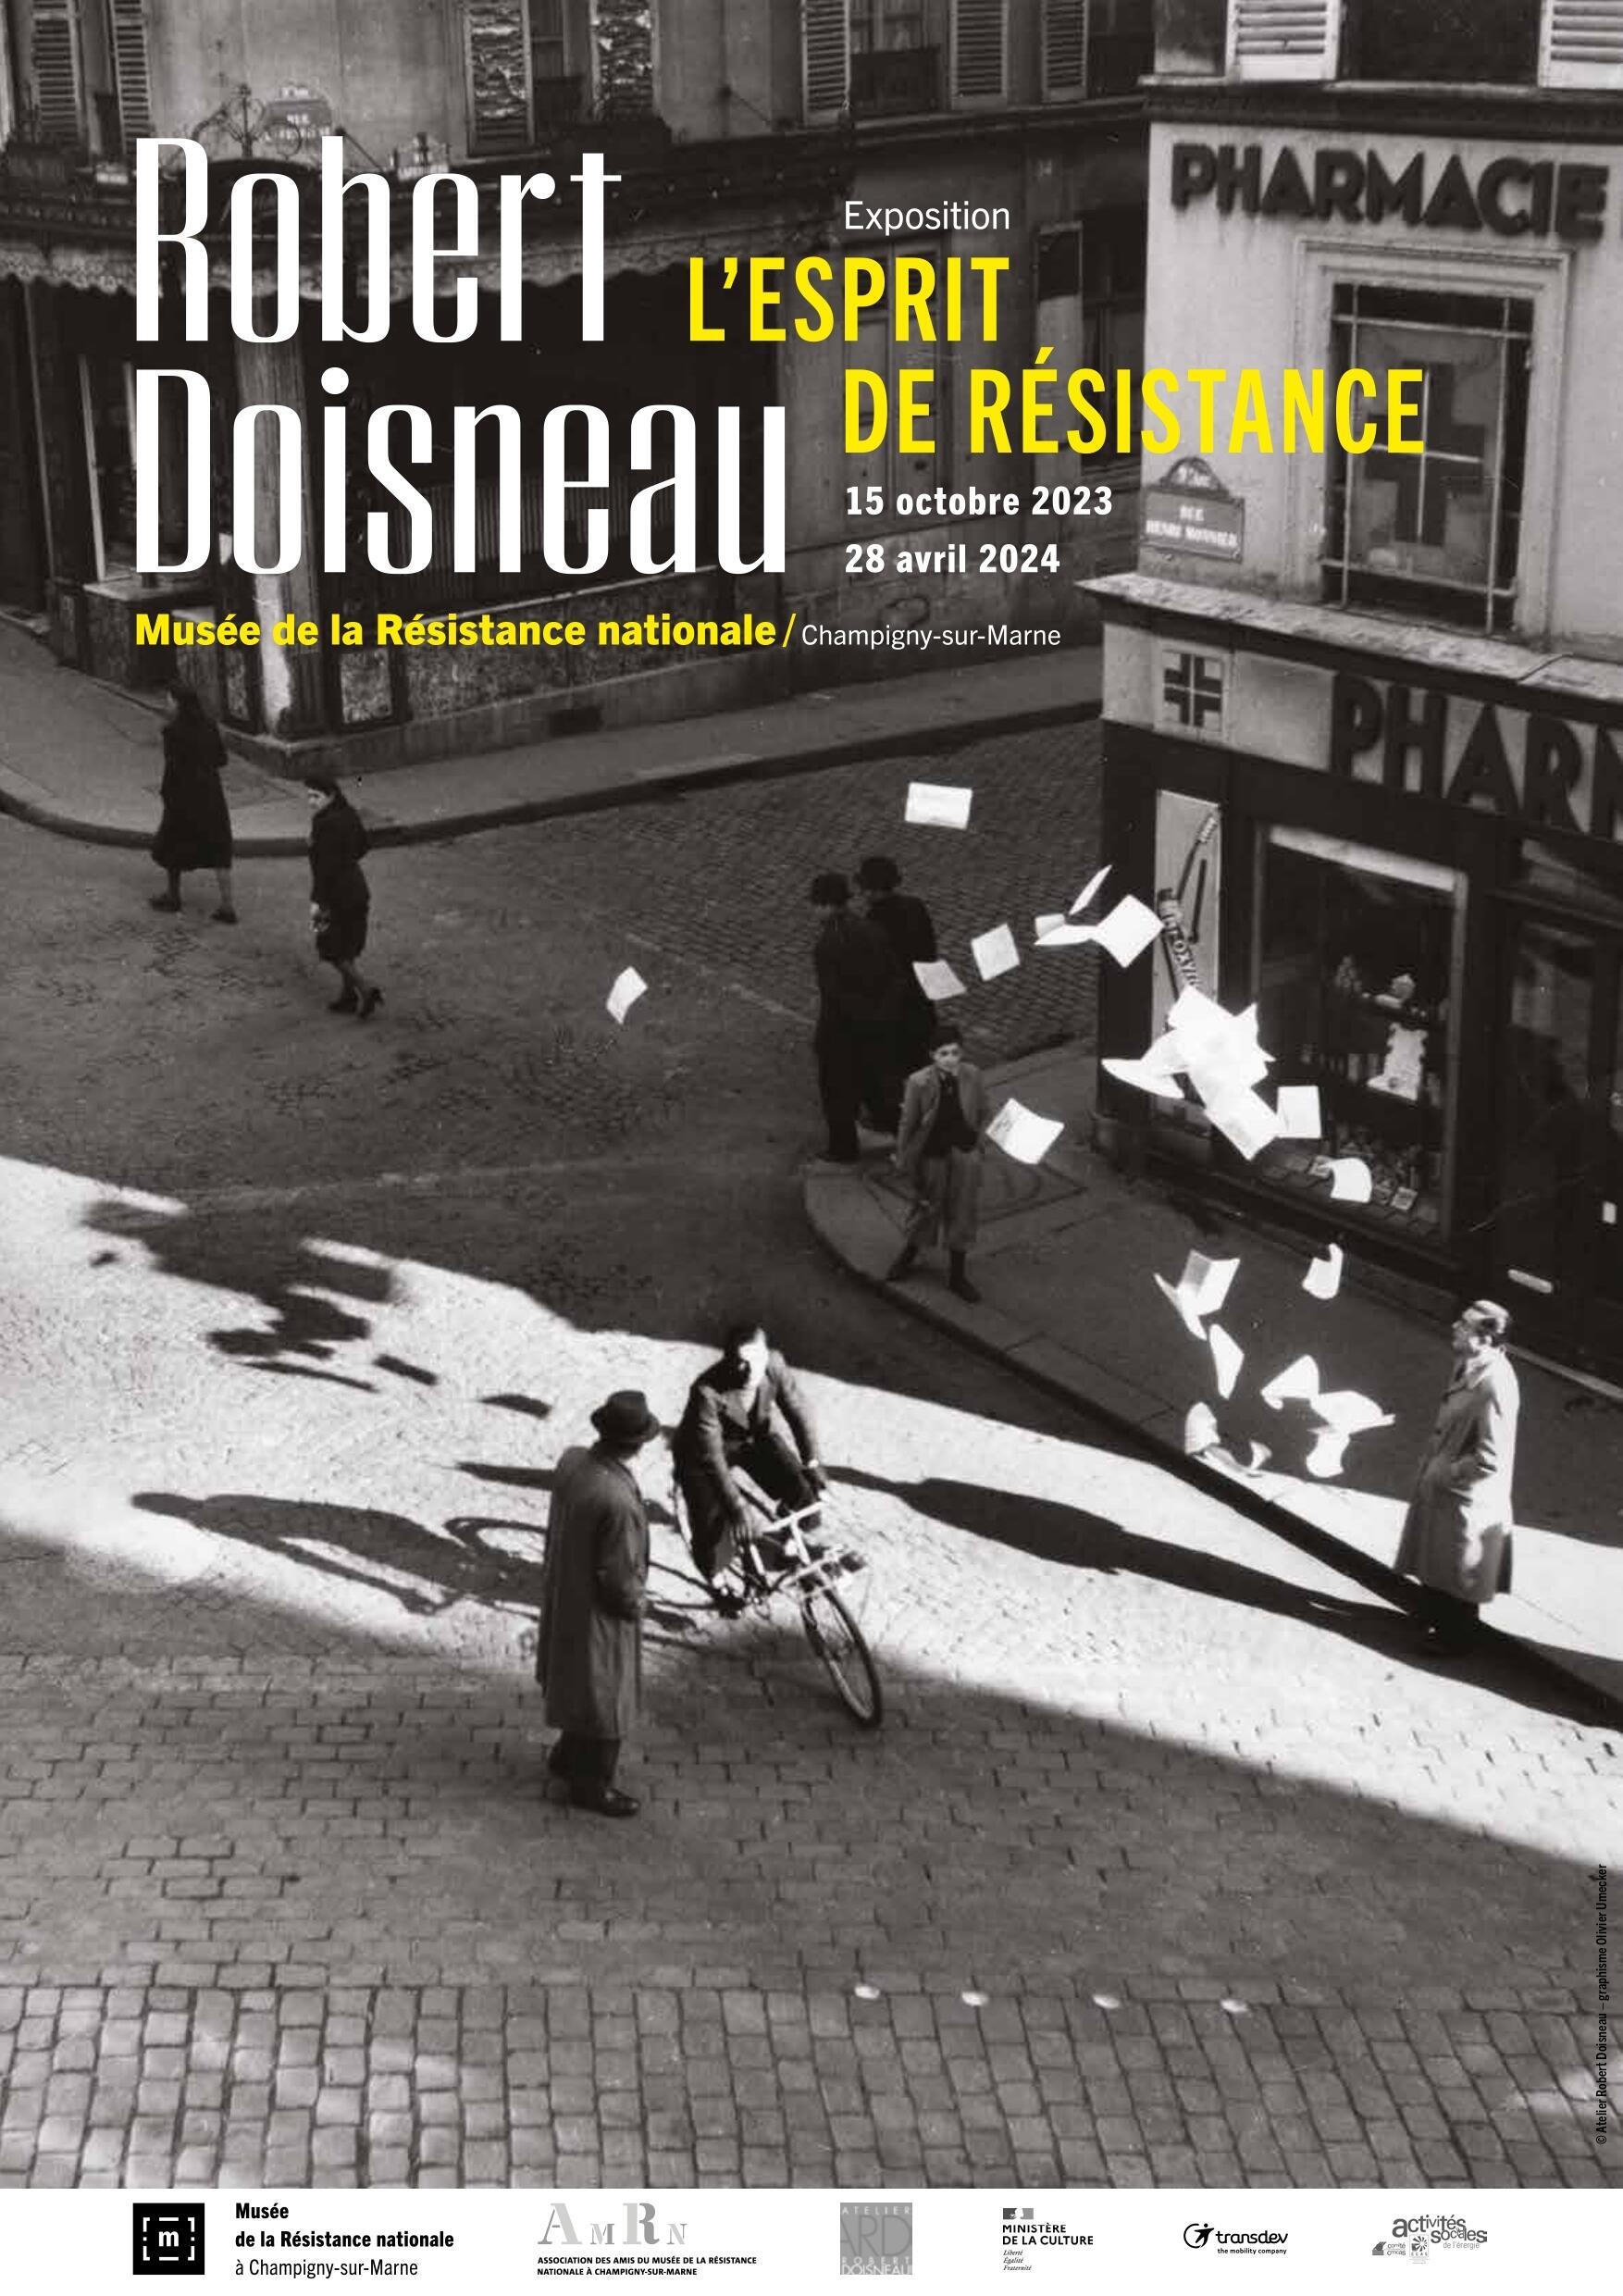 La exposición “Robert Doisneau: El espíritu de resistencia” se presenta en el Musée de la Résistance nationale del 15 de octubre de 2023 al 28 de abril de 2024.